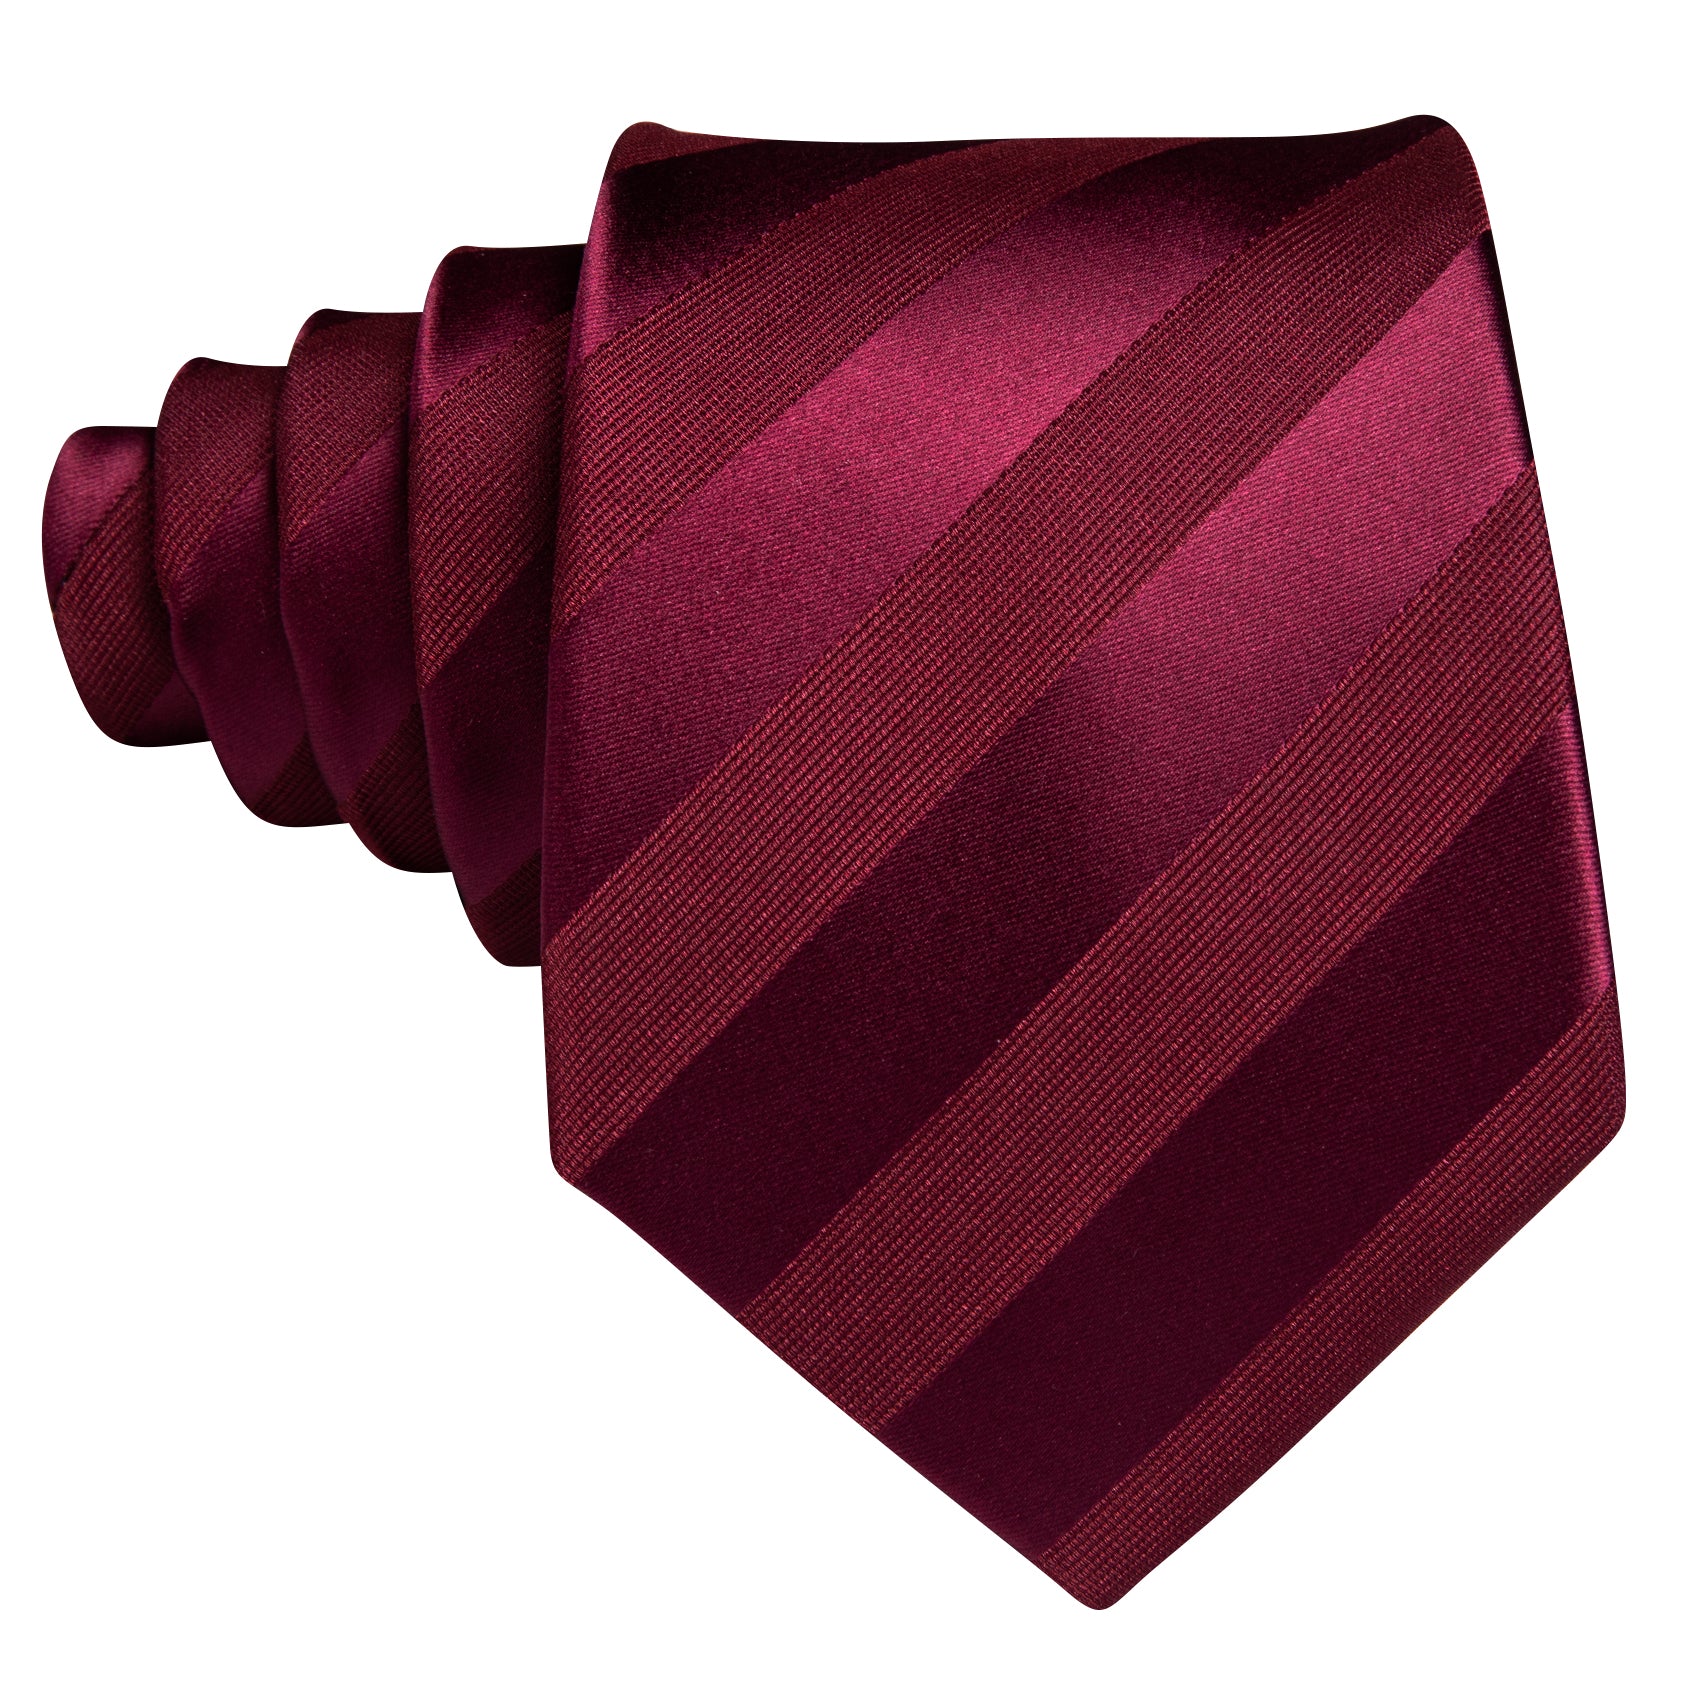 Burgundy Red Striped Silk Tie Pocket Square Cufflinks Set